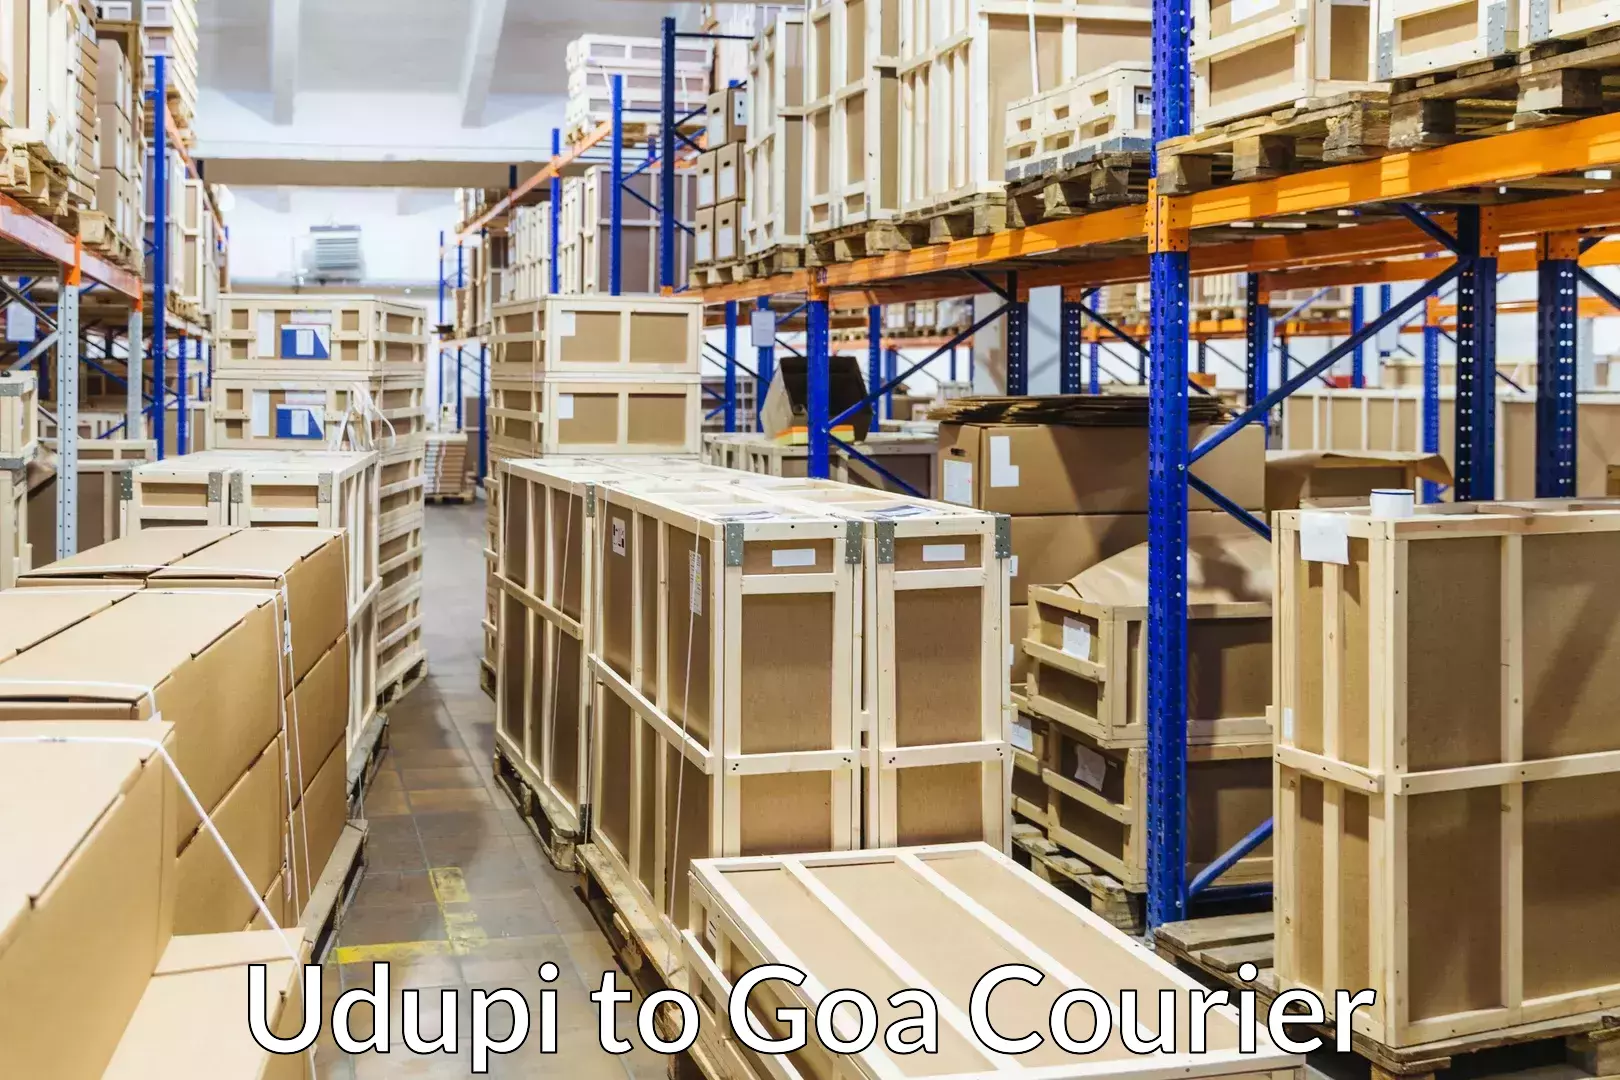 Professional packing services Udupi to Vasco da Gama